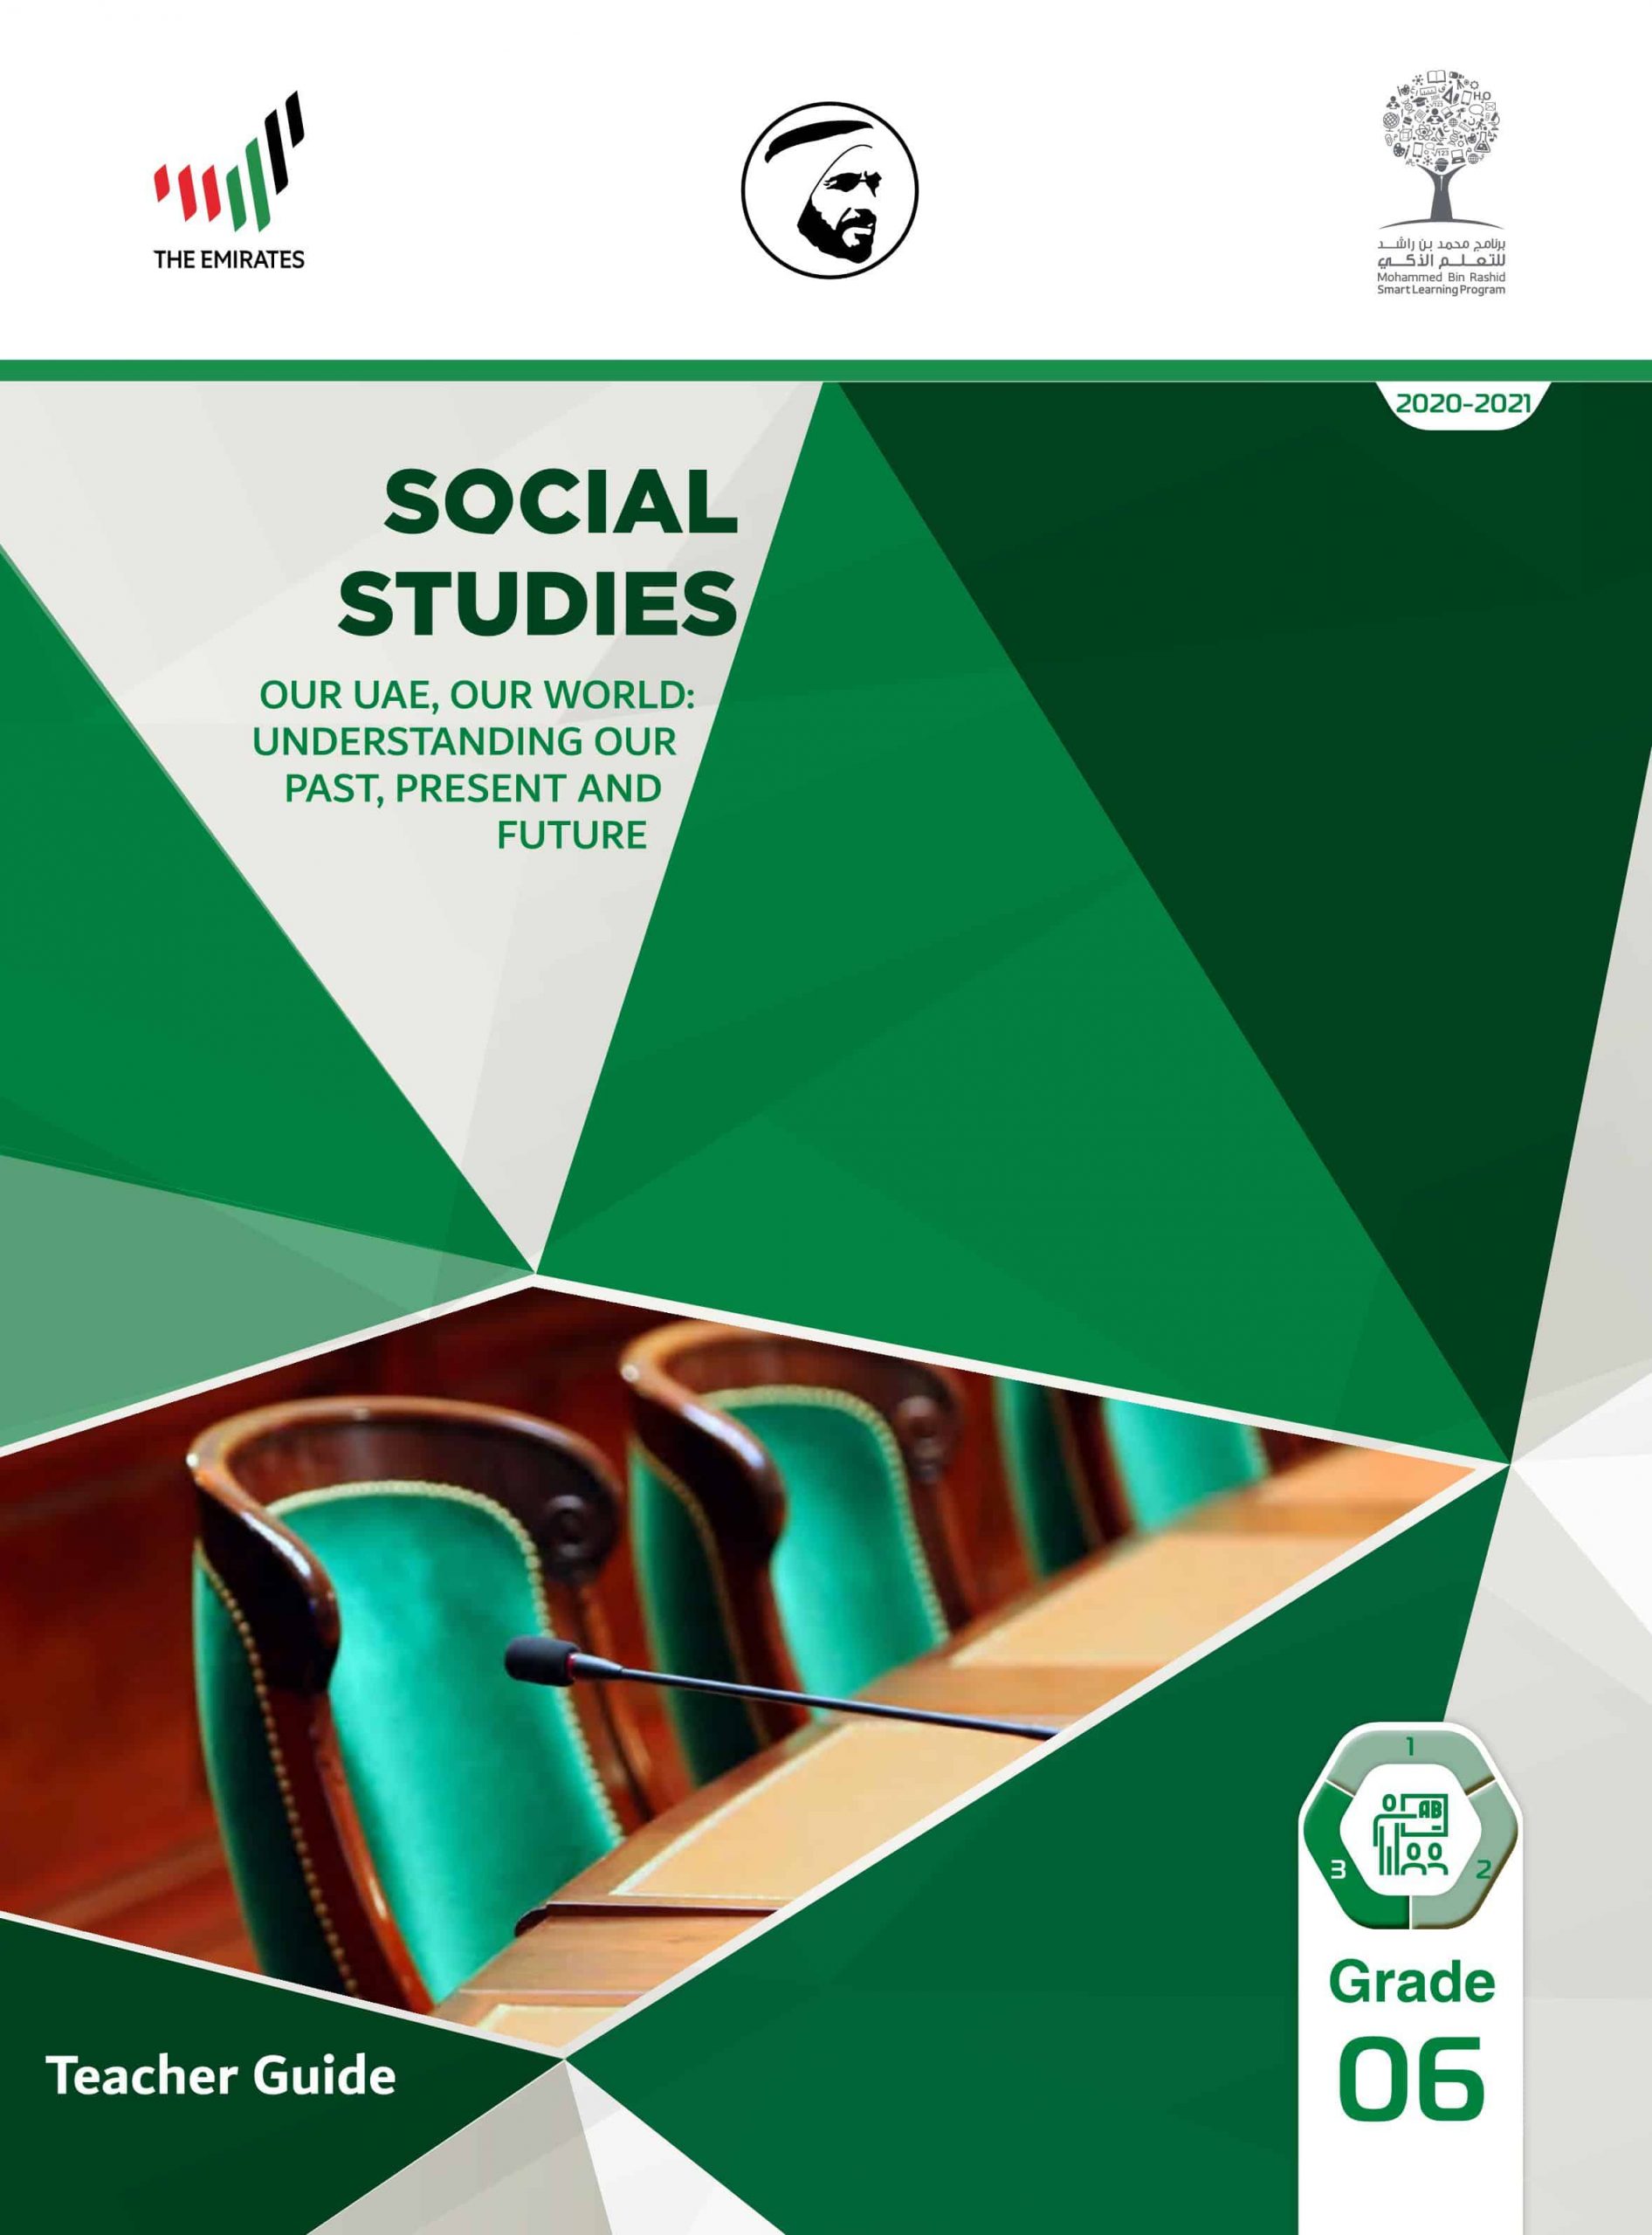 دليل المعلم بالإنجليزي الفصل الدراسي الثالث 2020-2021 الصف السادس مادة الدراسات الإجتماعية والتربية الوطنية